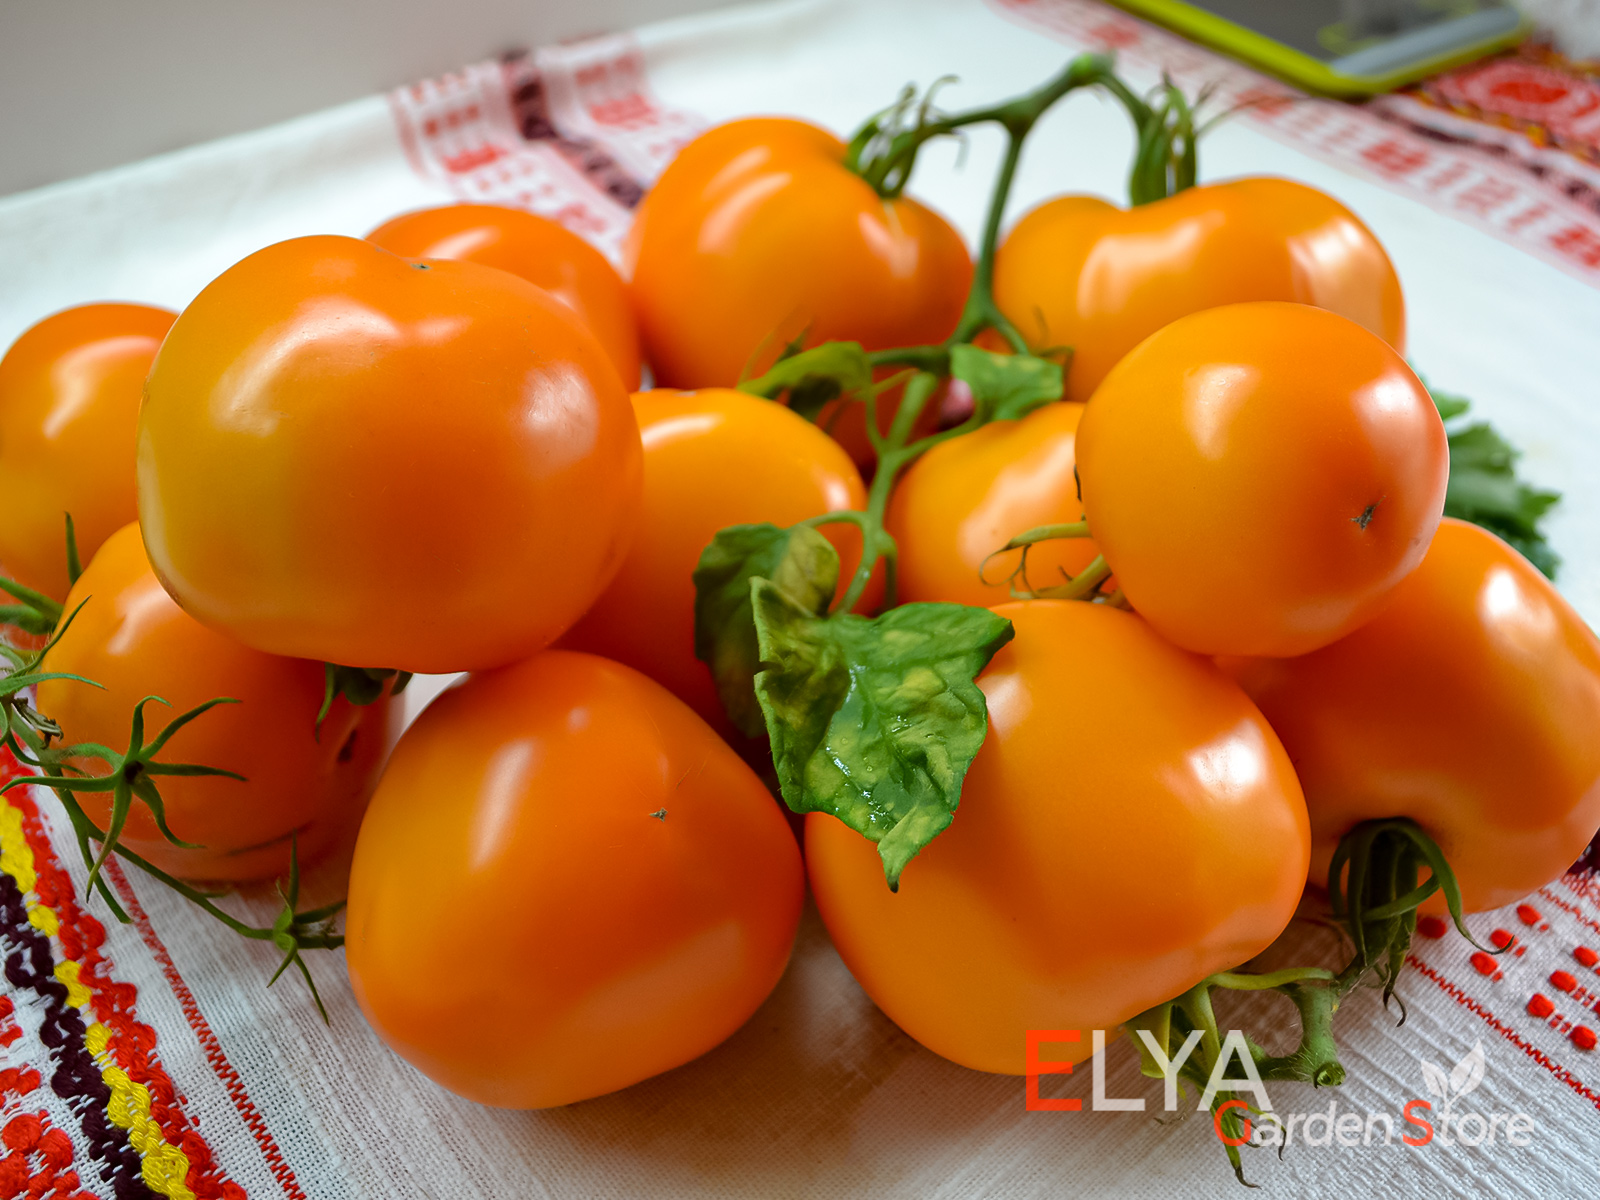 Семена томата Мандарин Кросс - коллекционный сорт, урожайный и неприхотливый с отличным вкусом - фото Elya Garden 